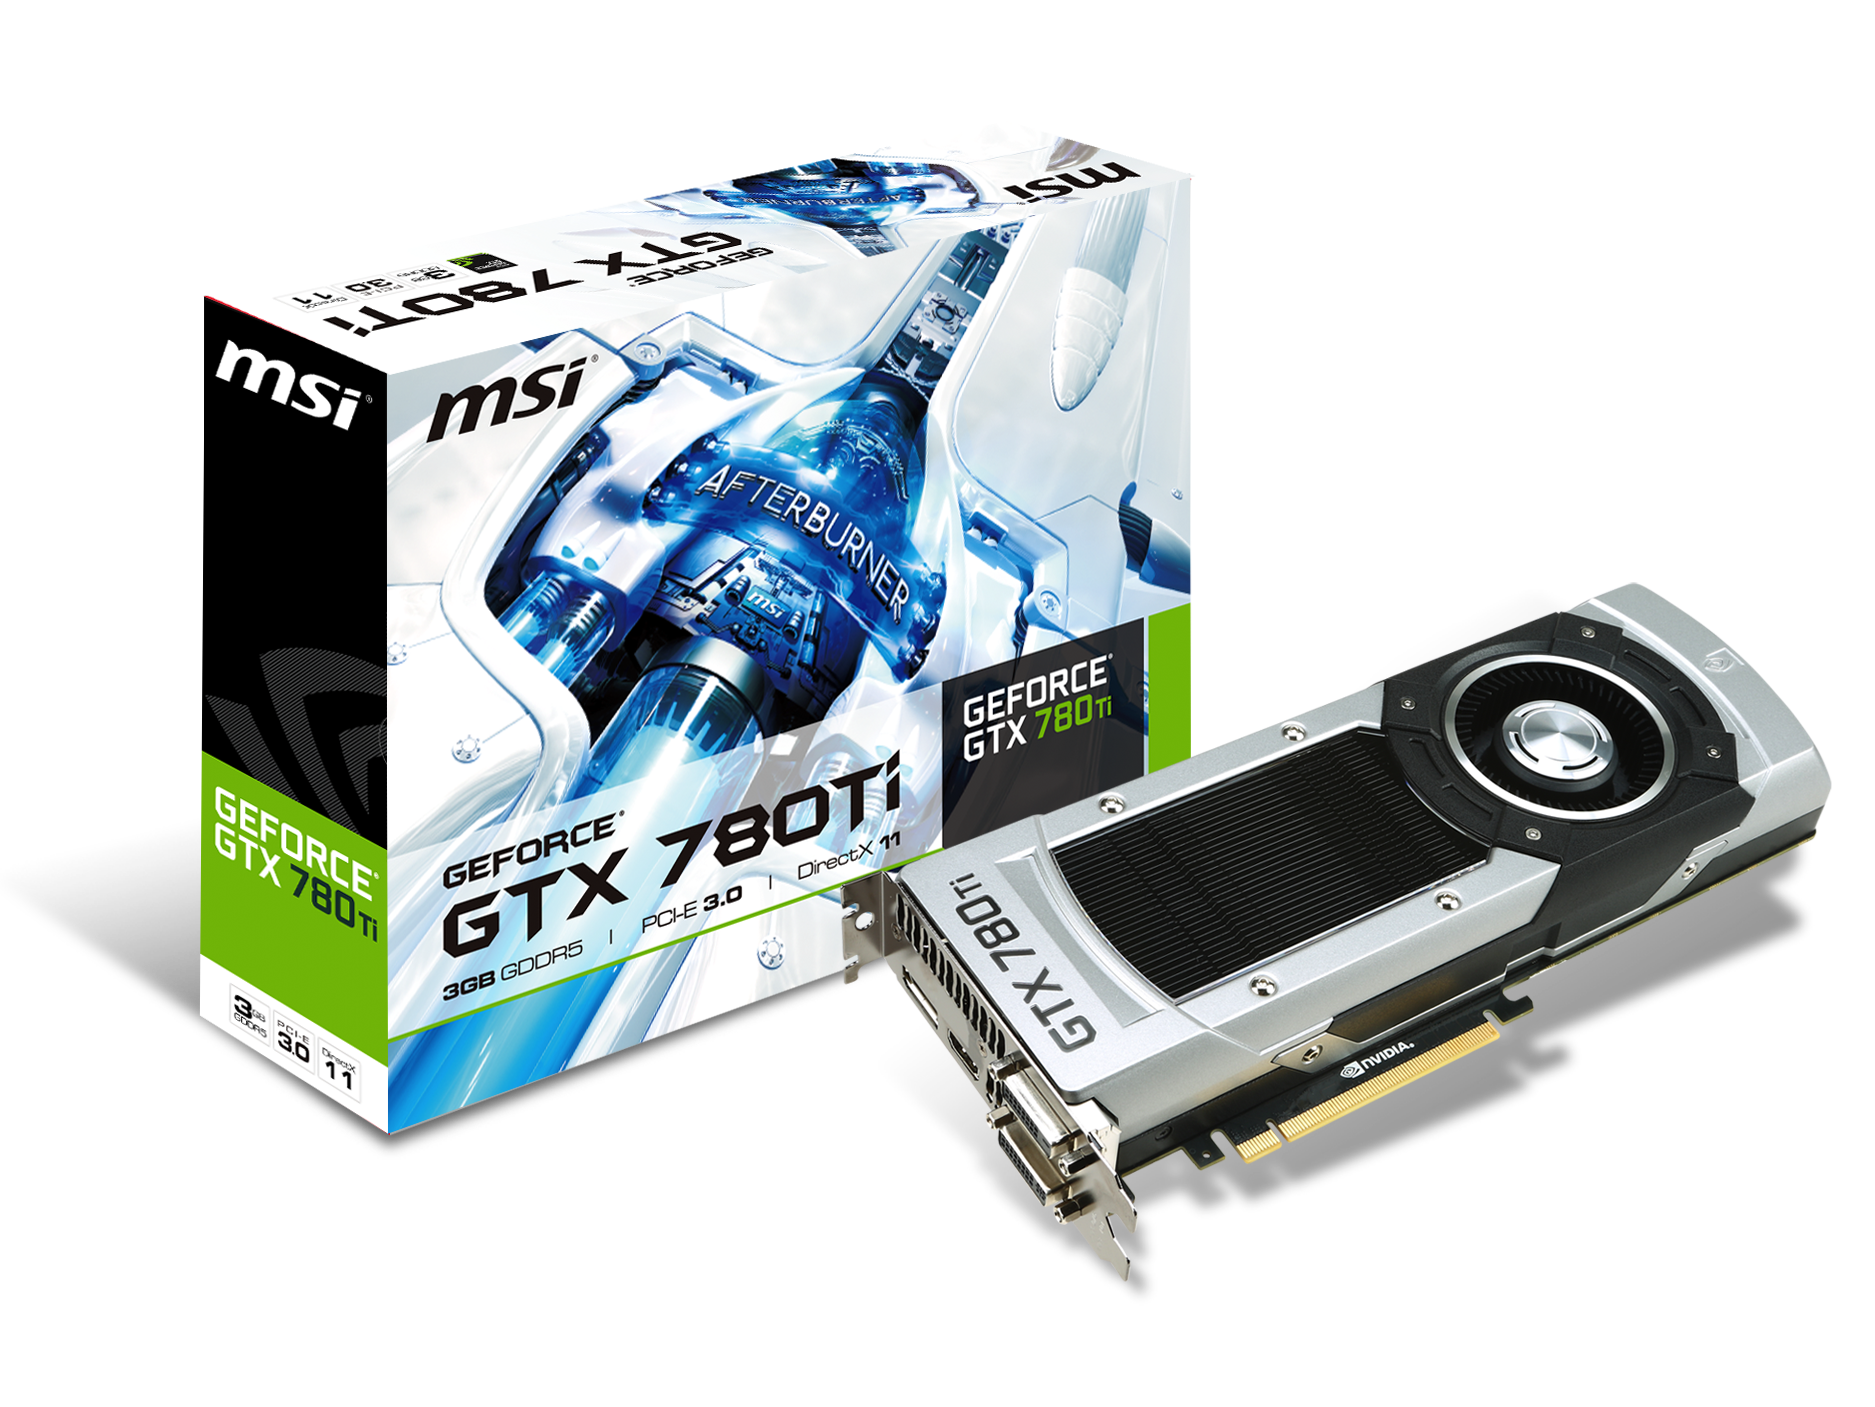 微星發布GeForce GTX 780 Ti顯示卡，支援GPU Boost 2.0技術。搭載最新NVIDIA G-SYNC技術，提供玩家更完美的遊戲體驗。